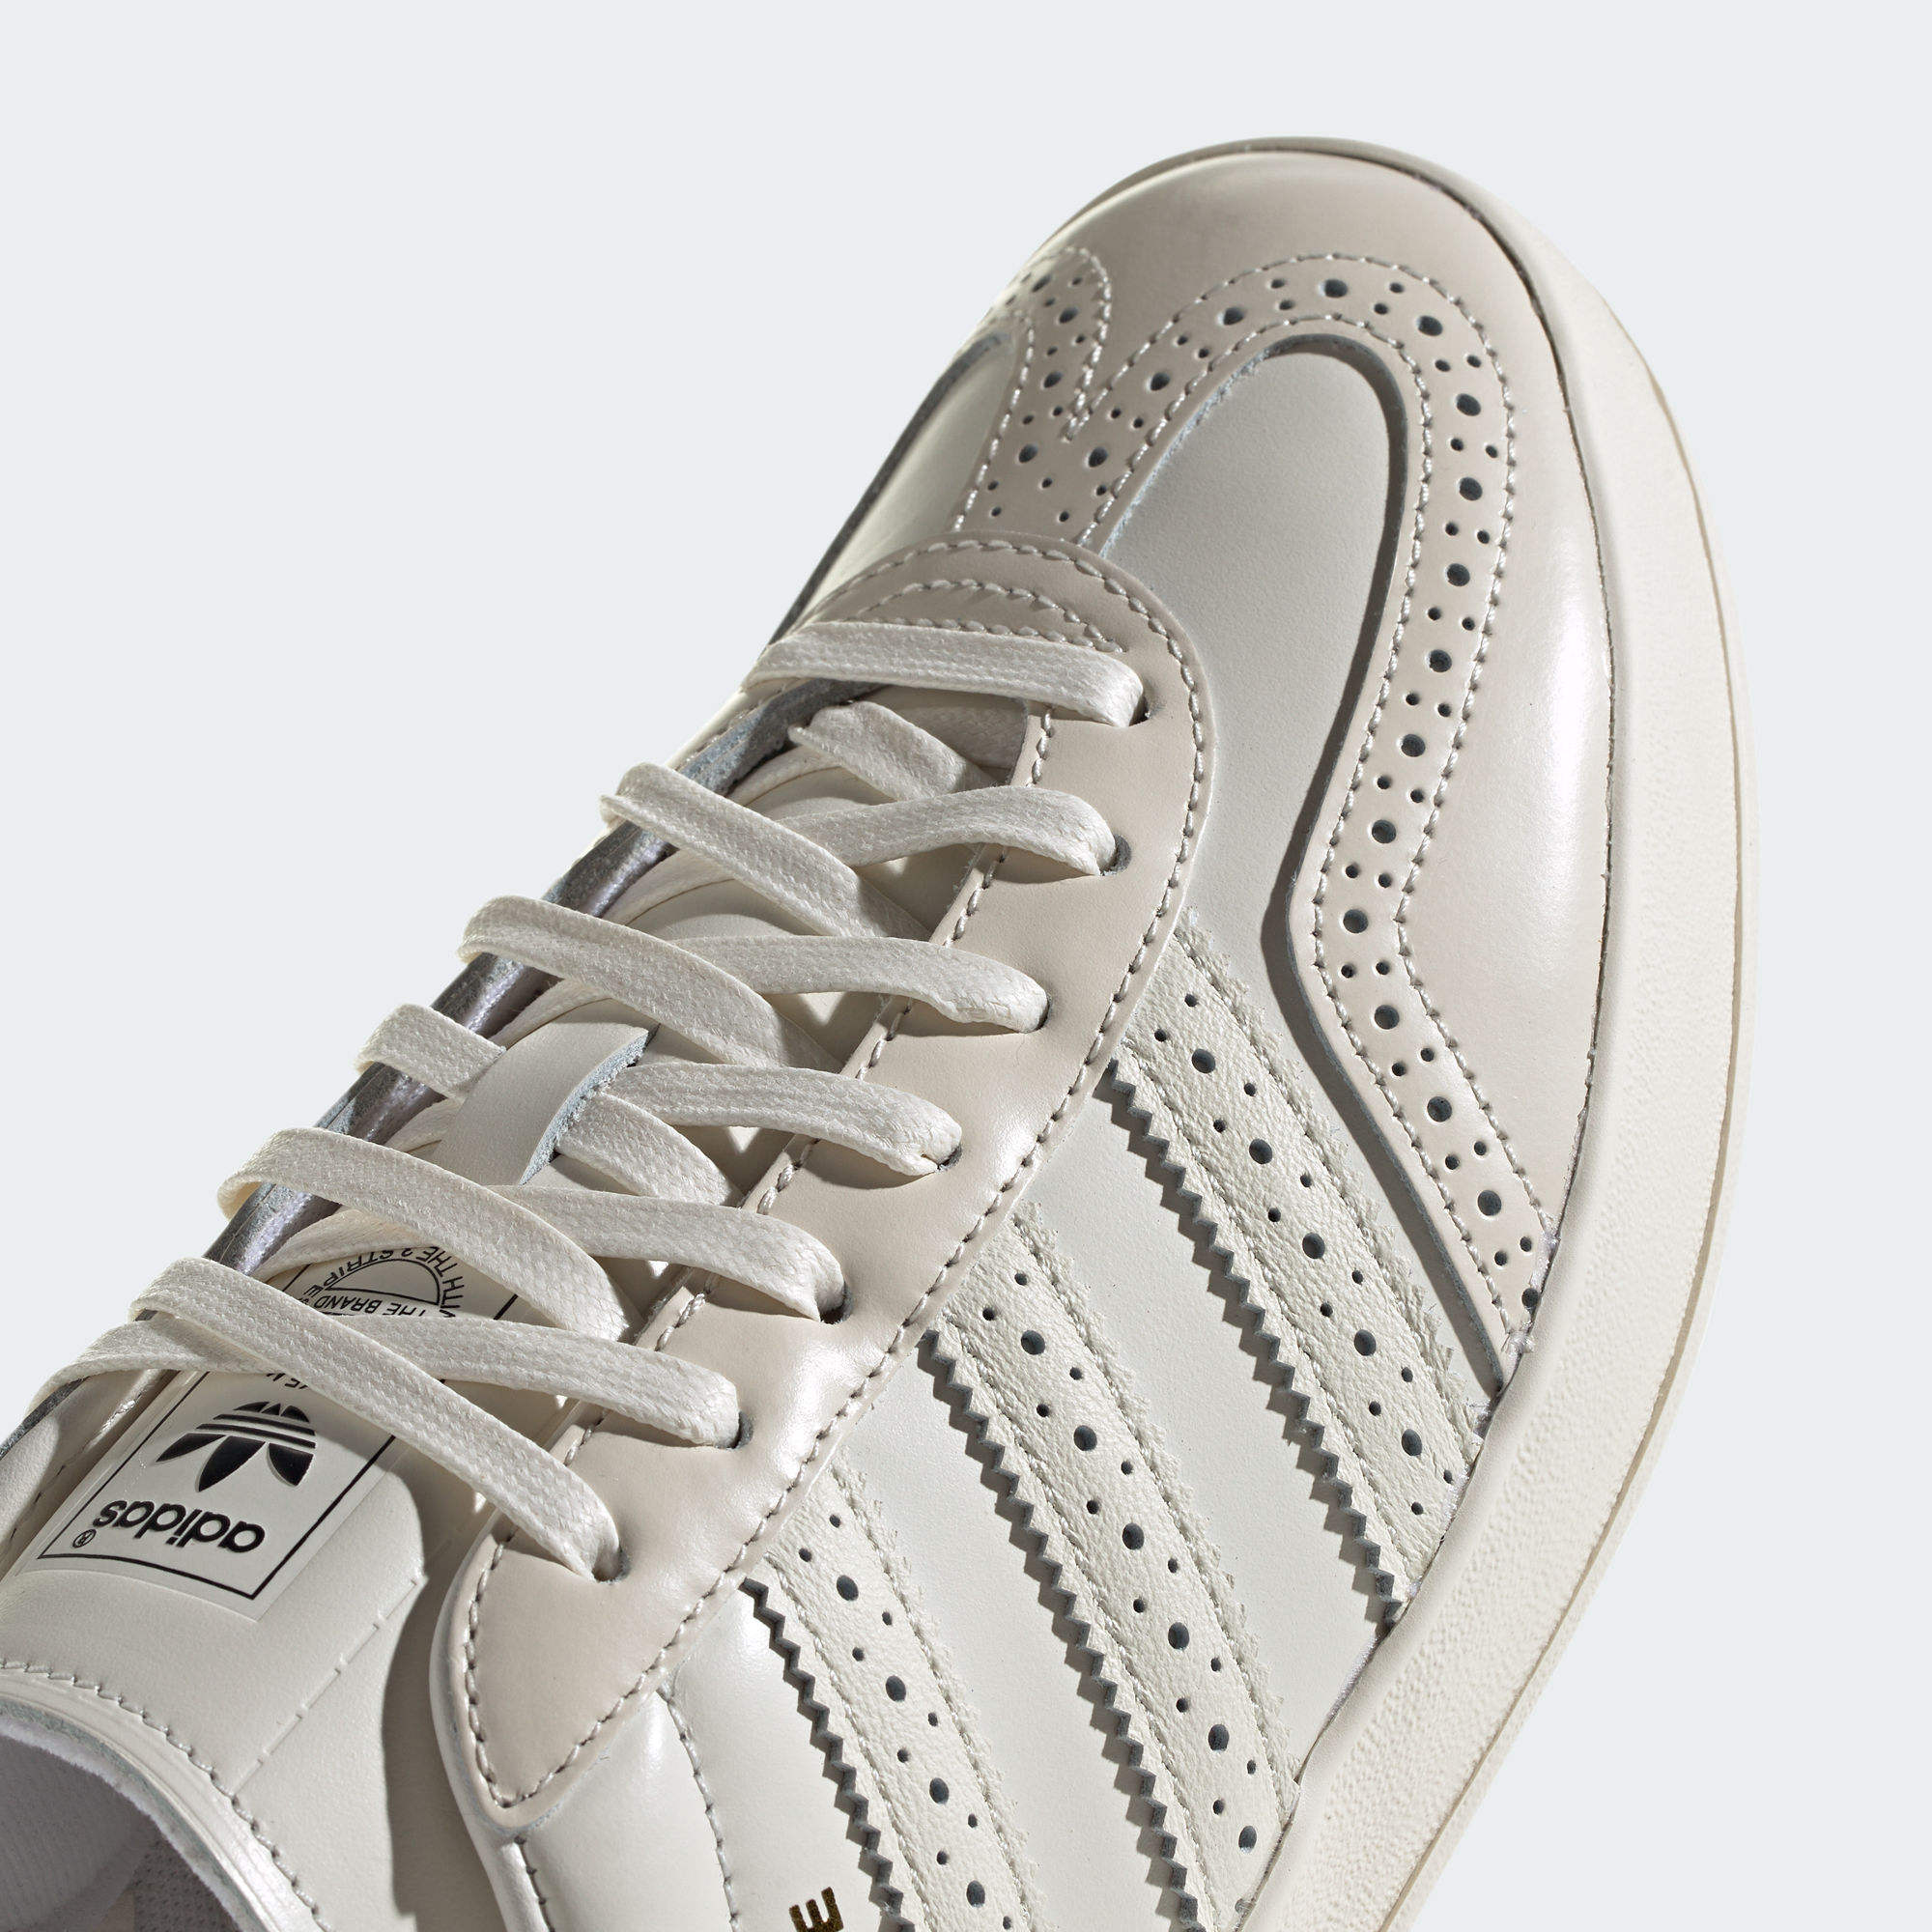 GAZELLE 低筒室內運動鞋- 白色| 女子| adidas(愛迪達)香港官方網上商店